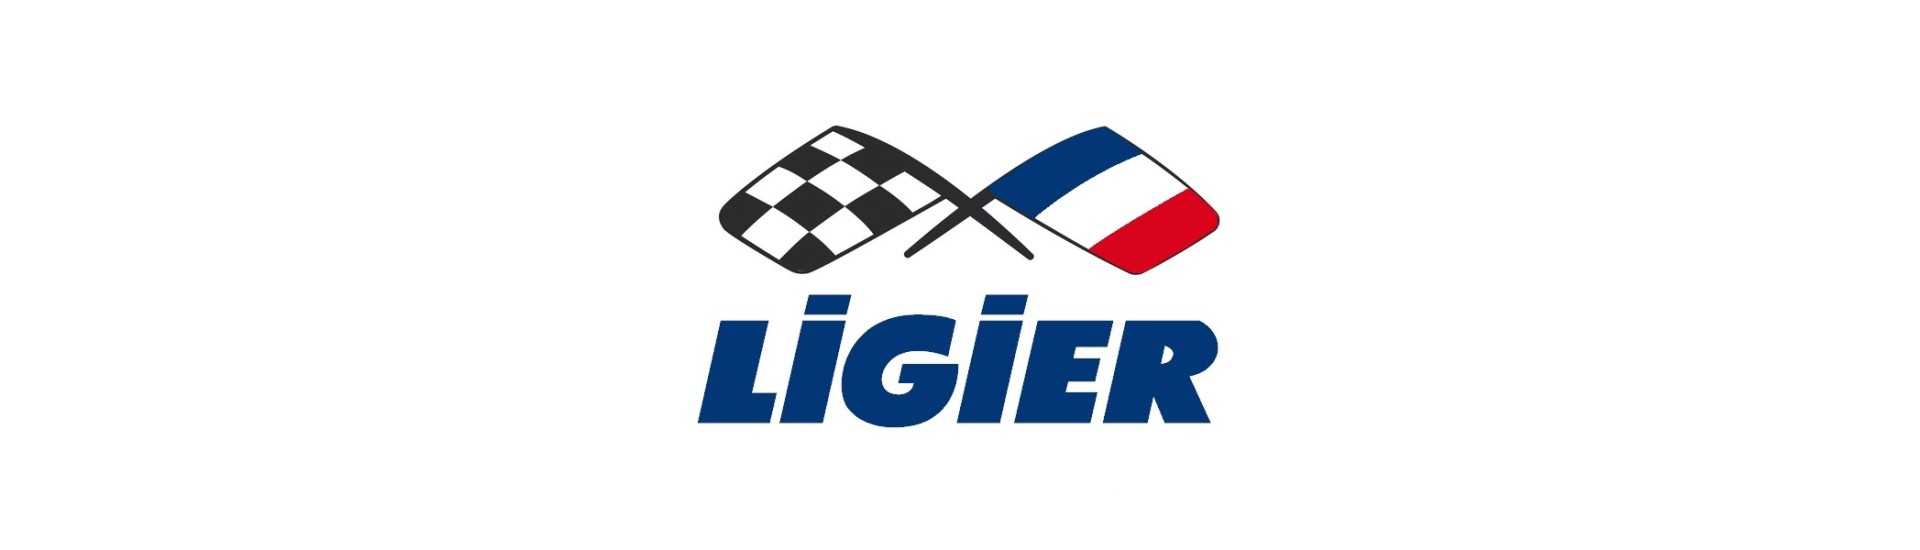 Silent bloque de escape en el mejor precio del coche sin licencia Ligier